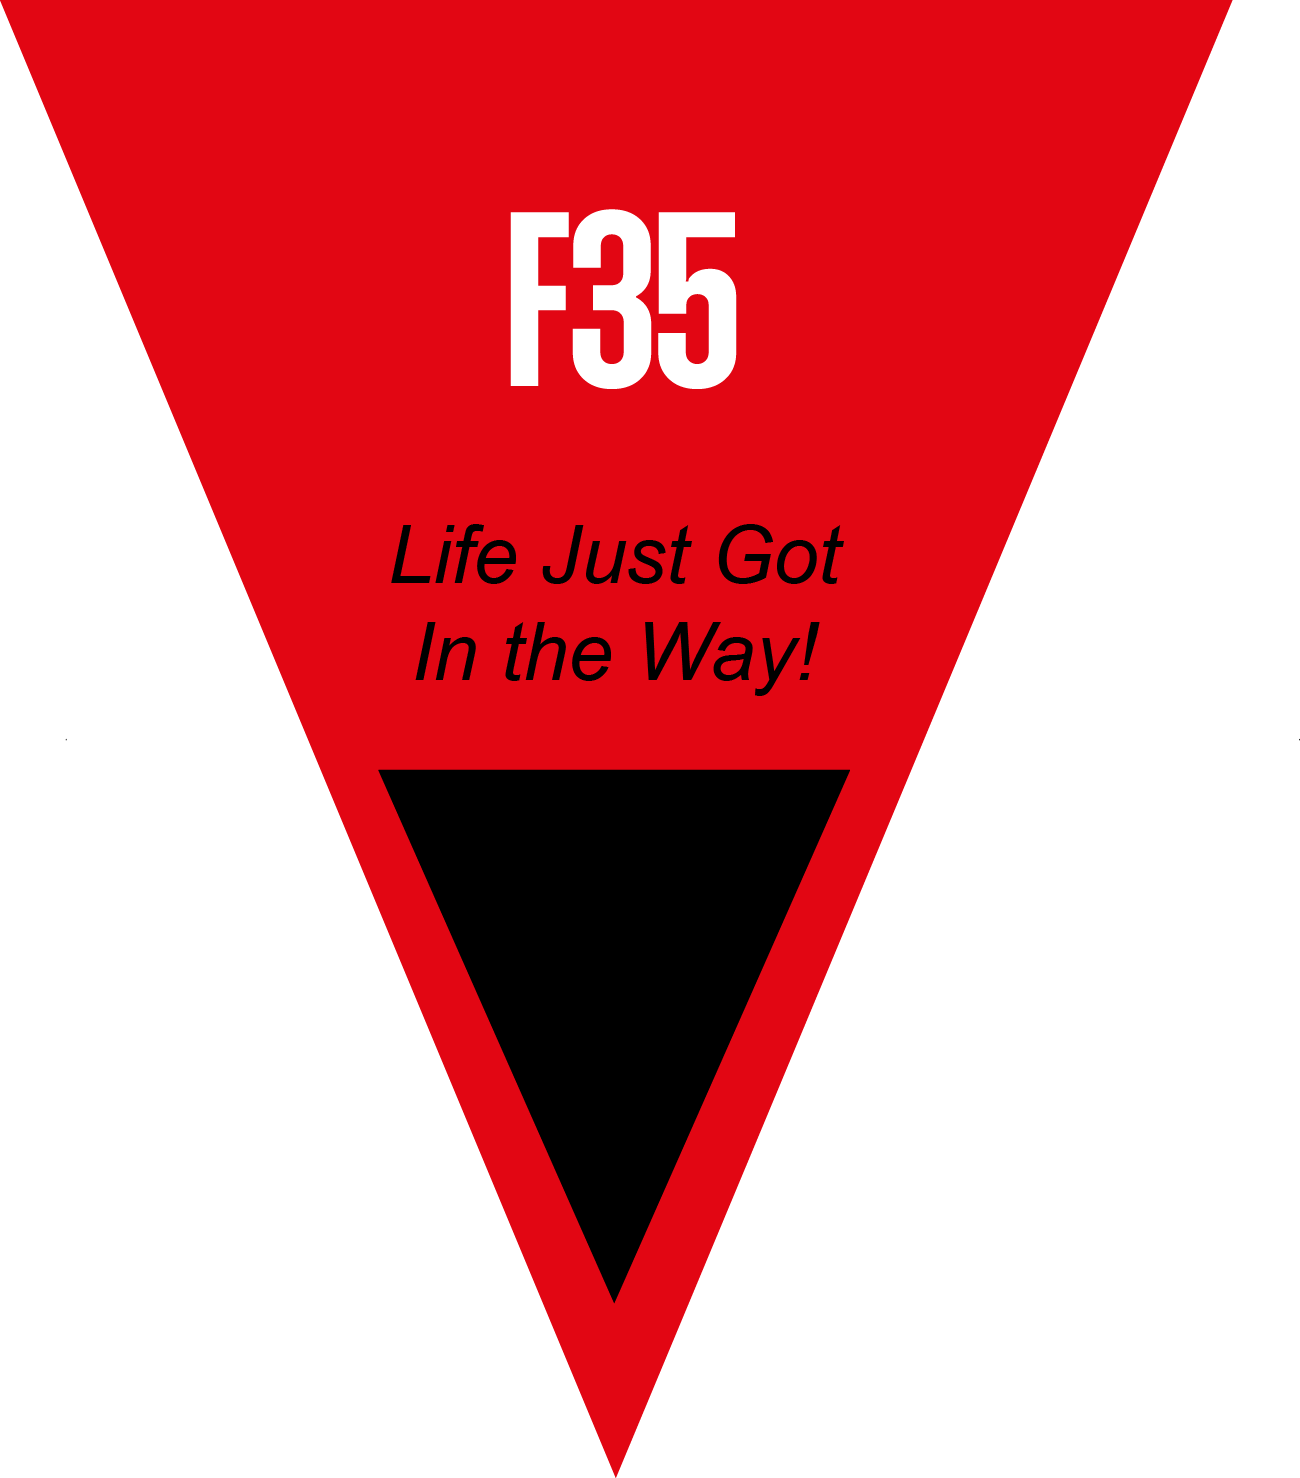 FRR Club F35